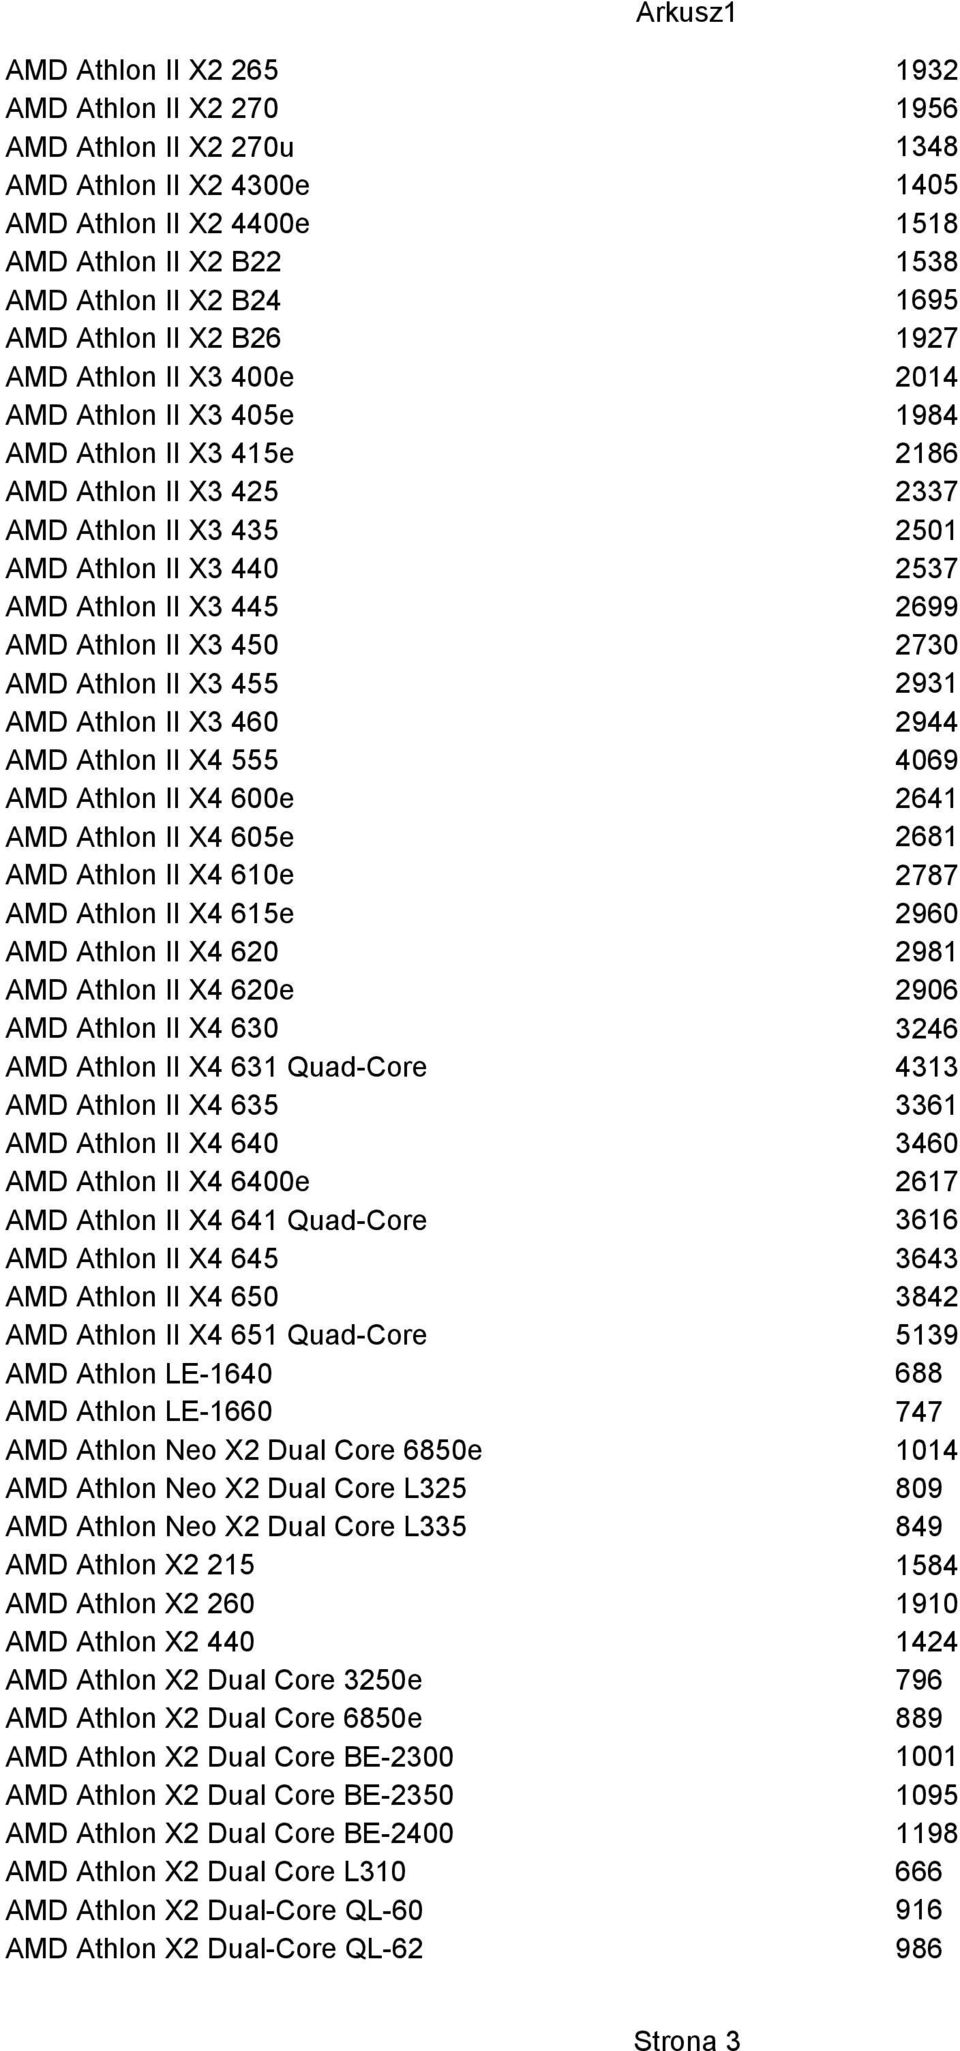 II X4 555 AMD Athlon II X4 600e AMD Athlon II X4 605e AMD Athlon II X4 610e AMD Athlon II X4 615e AMD Athlon II X4 620 AMD Athlon II X4 620e AMD Athlon II X4 630 AMD Athlon II X4 631 Quad-Core AMD